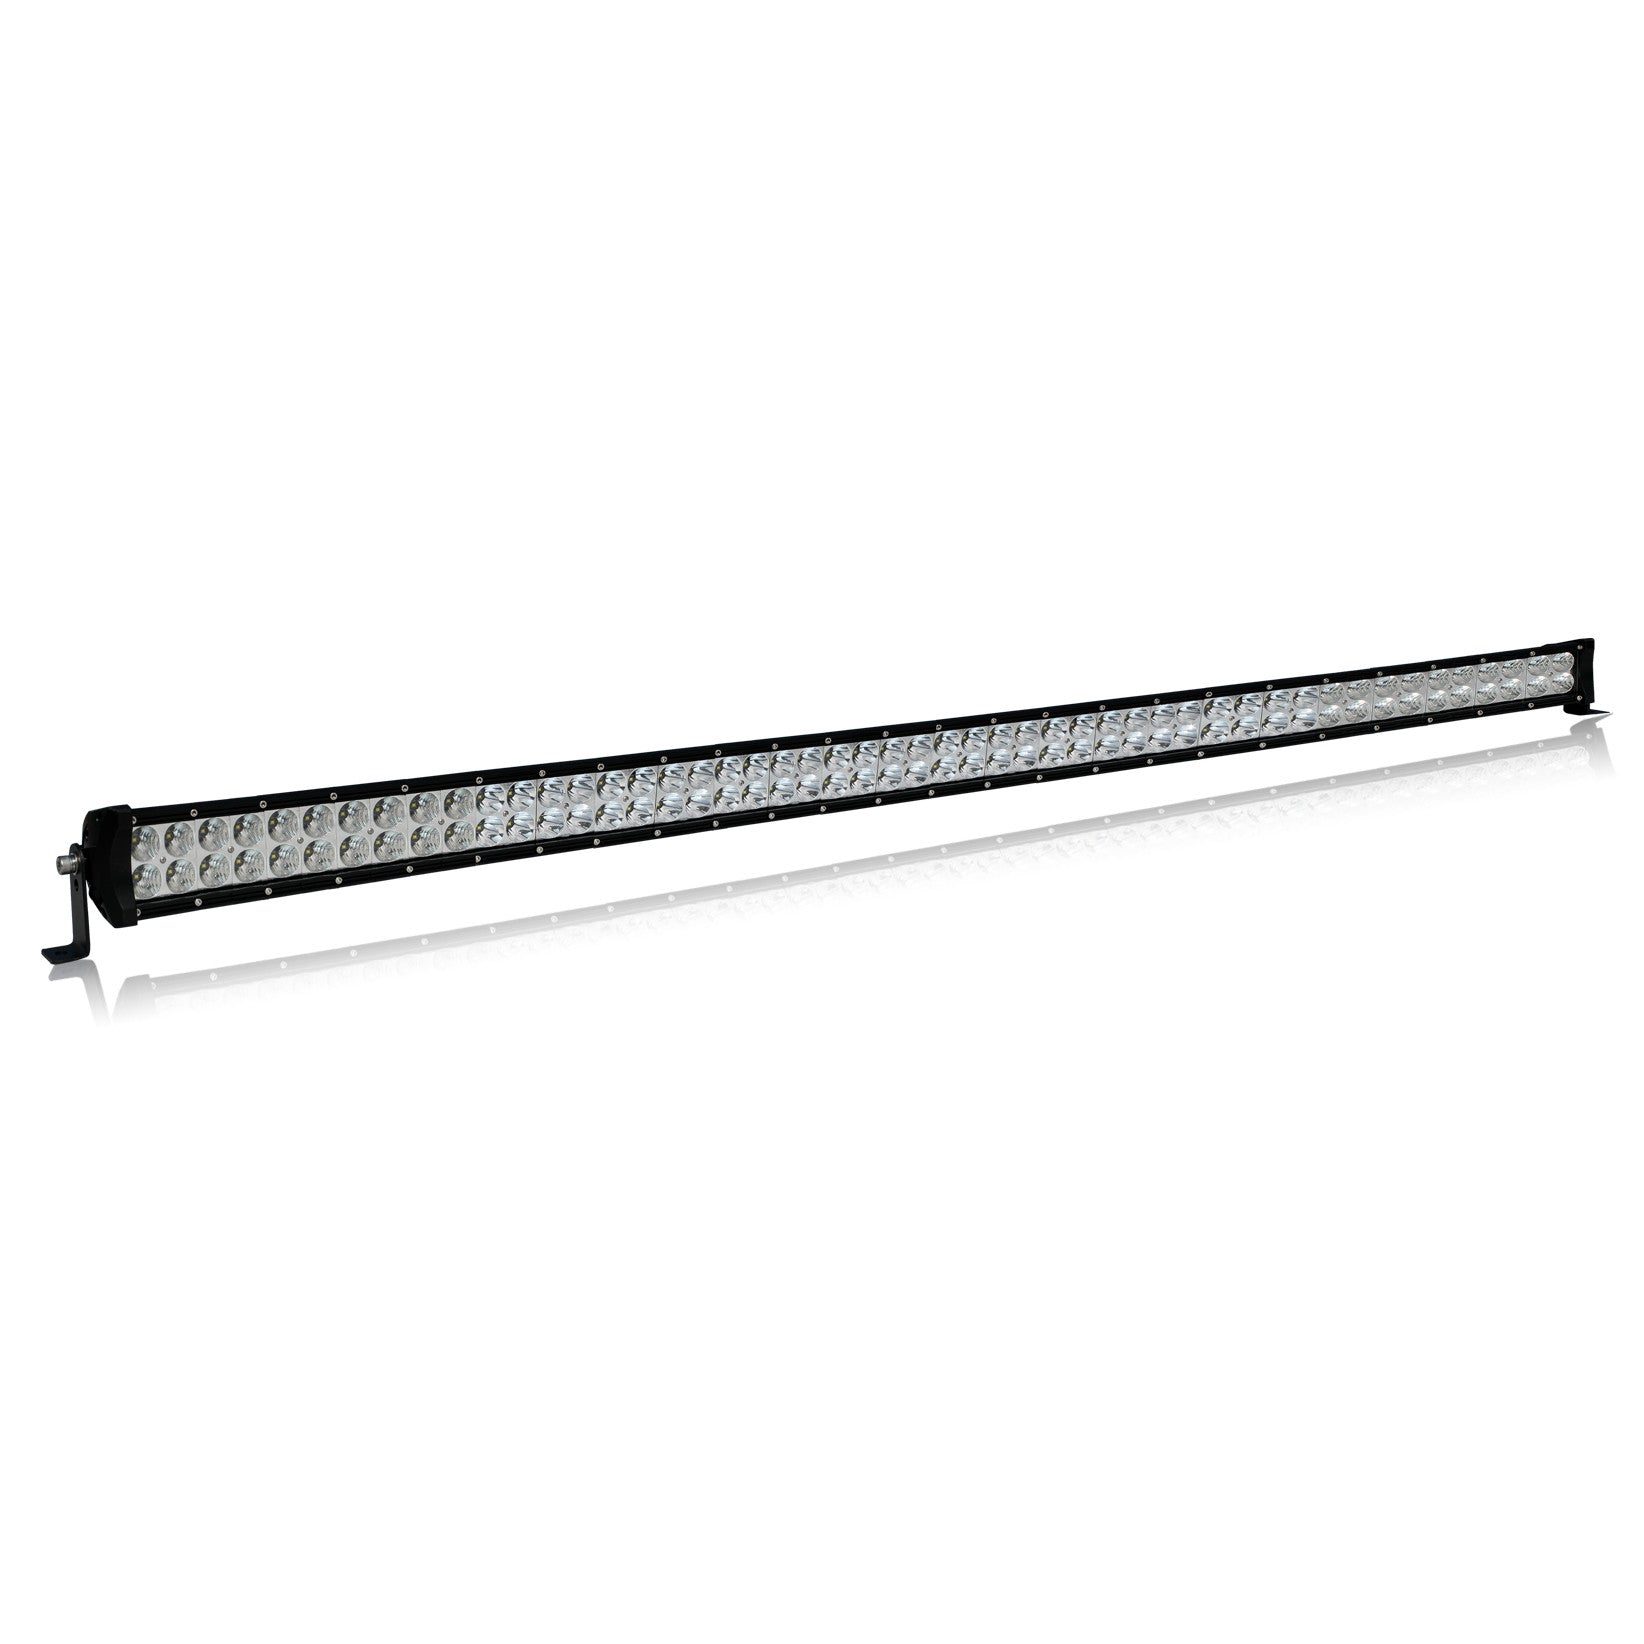 50 inch LED Light Bars